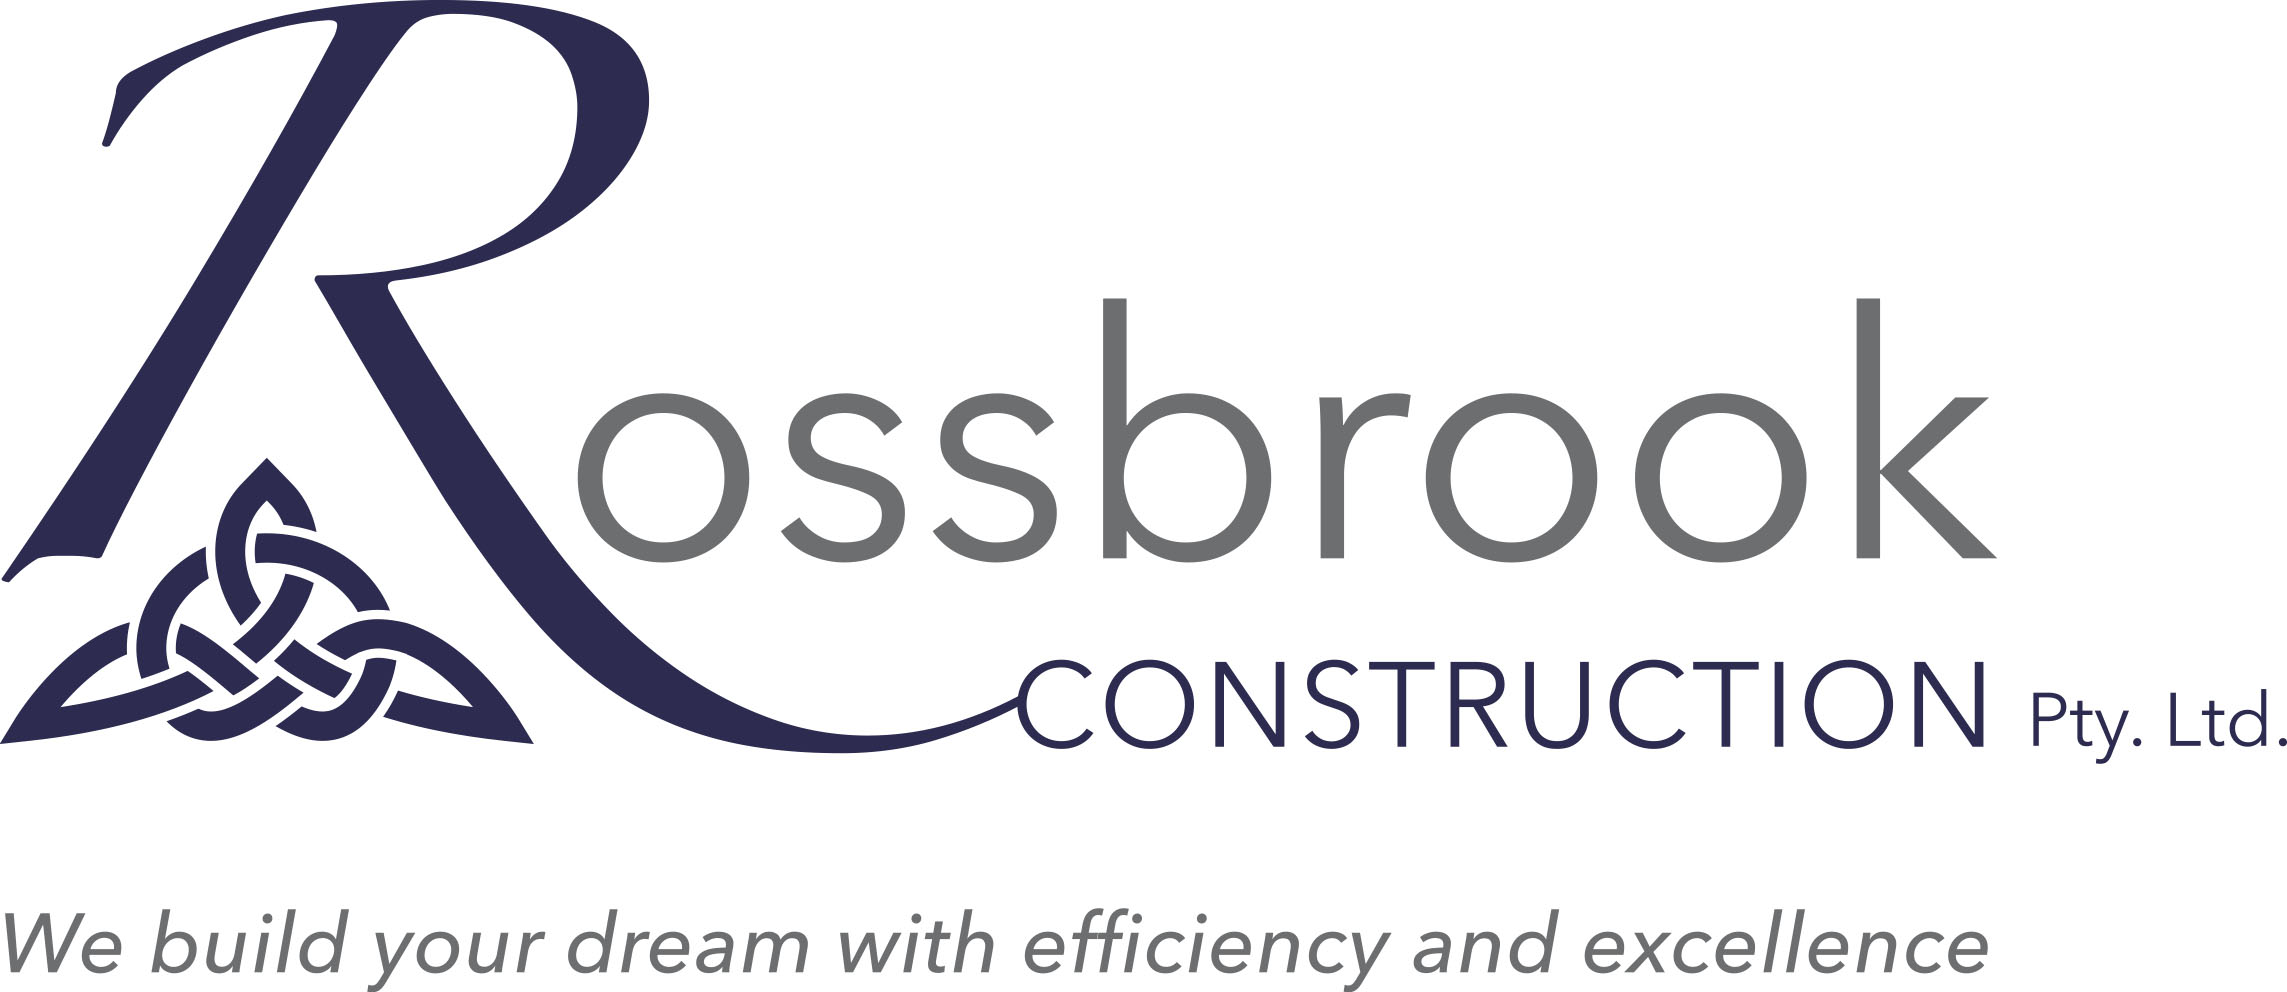 Rossbrook Construct Logo.jpg